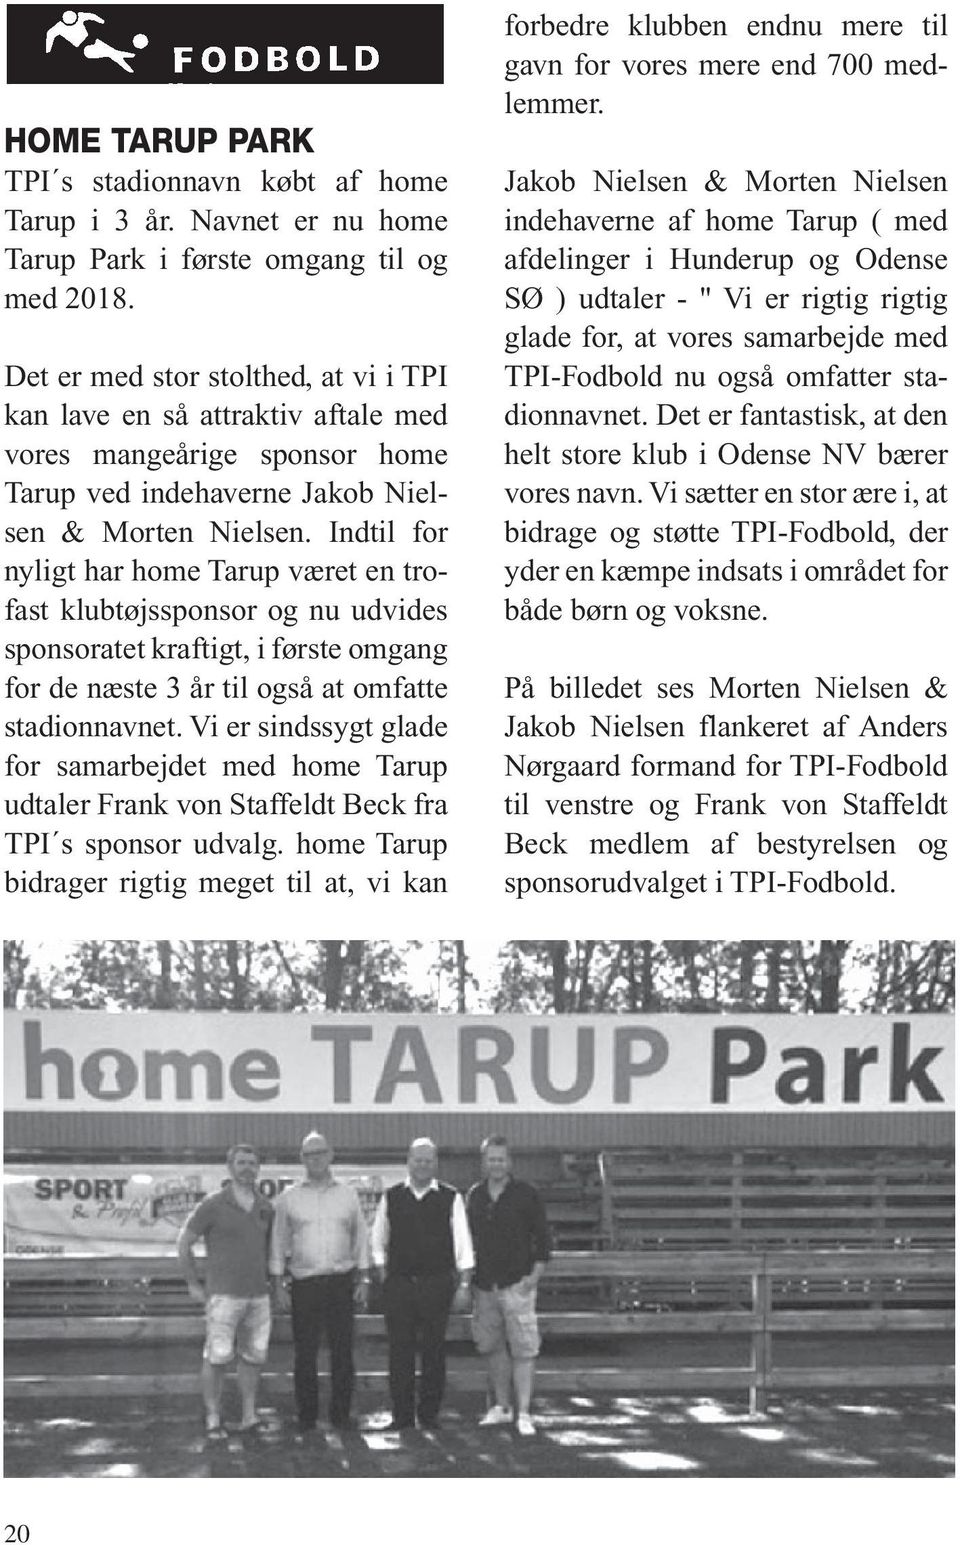 Indtil for nyligt har home Tarup været en trofast klubtøjssponsor og nu udvides sponsoratet kraftigt, i første omgang for de næste 3 år til også at omfatte stadionnavnet.